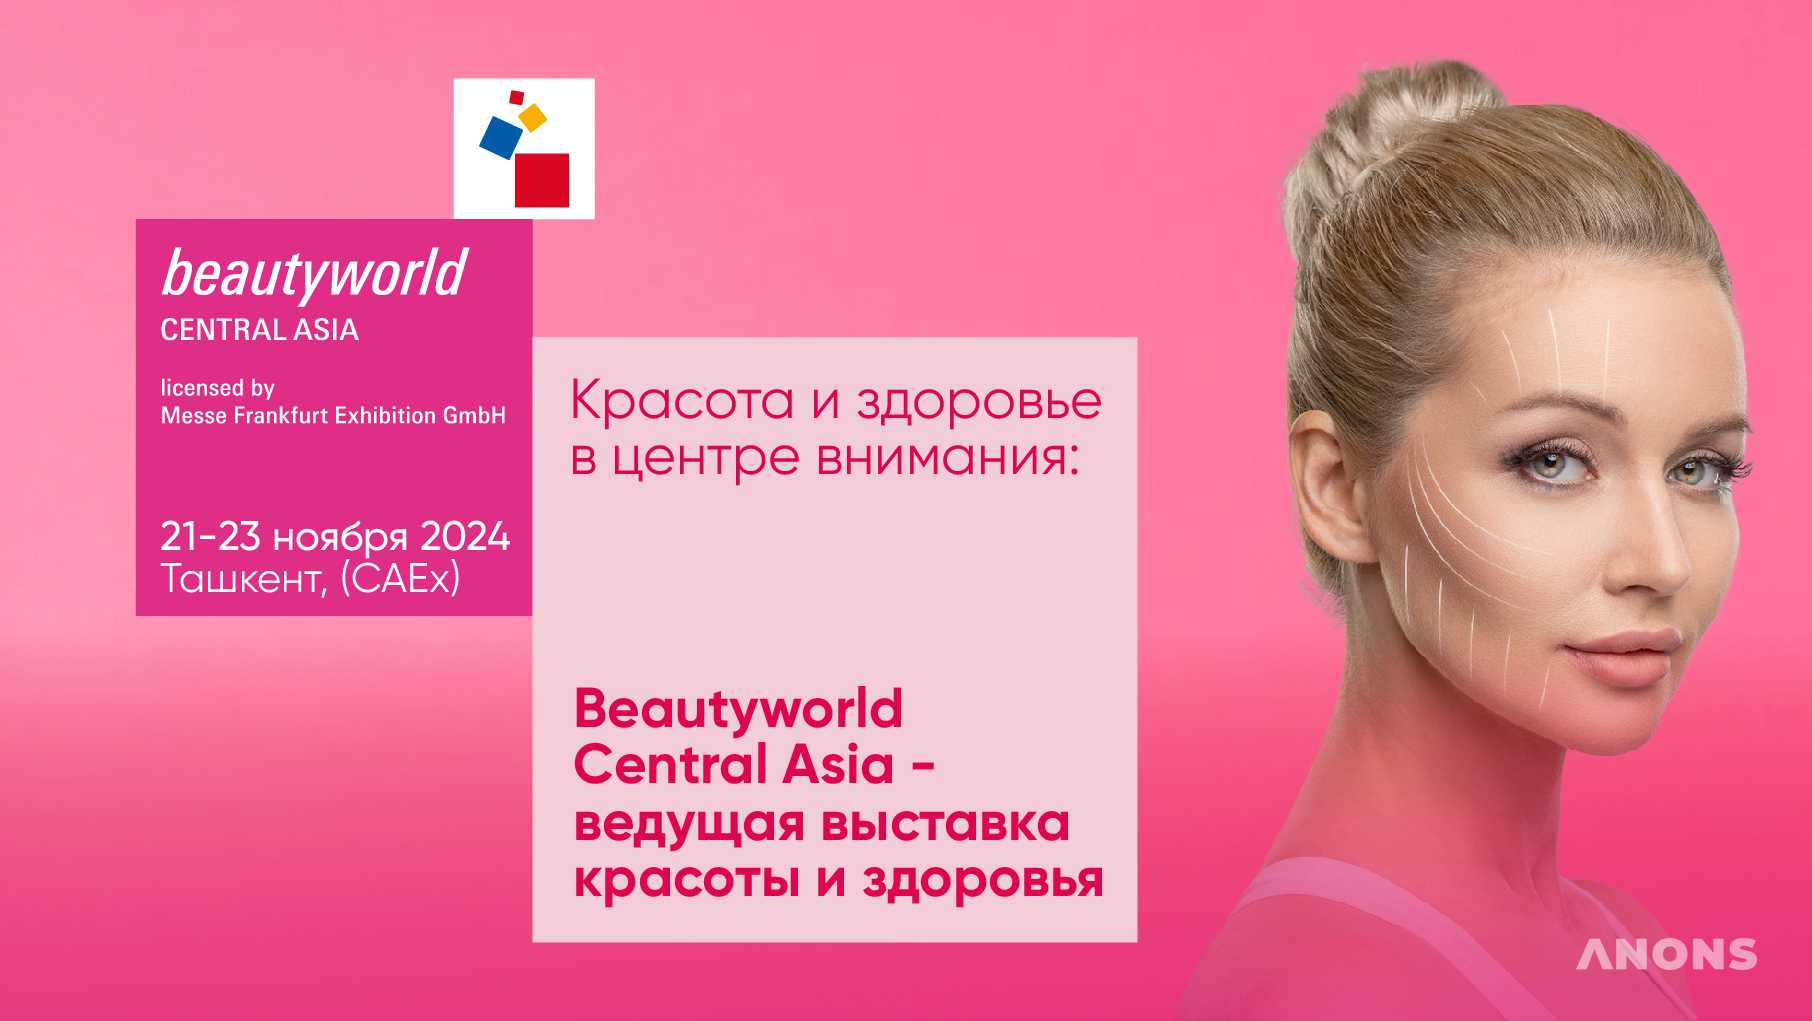 Ведущая выставка красоты и здоровья — Beautyworld Central Asia 2024 пройдет в Ташкенте